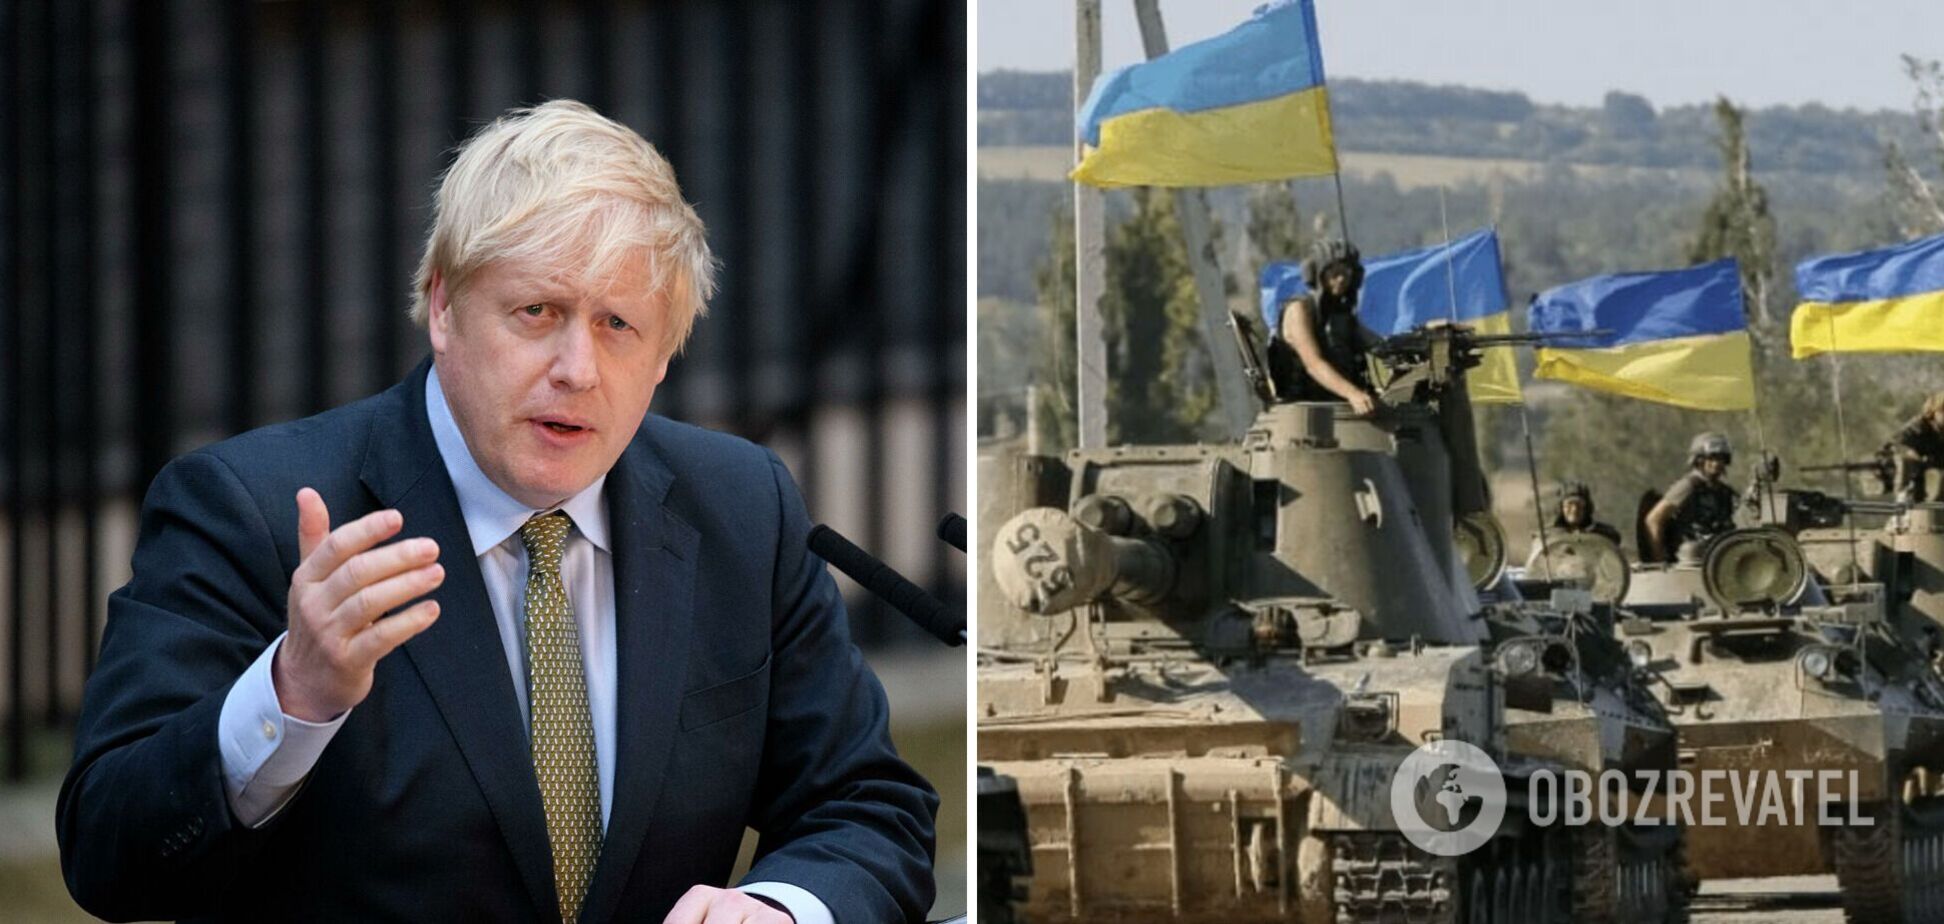 'Я впевнений, що українці переможуть': Борис Джонсон виголосив промову на підтримку ЗСУ. Відео